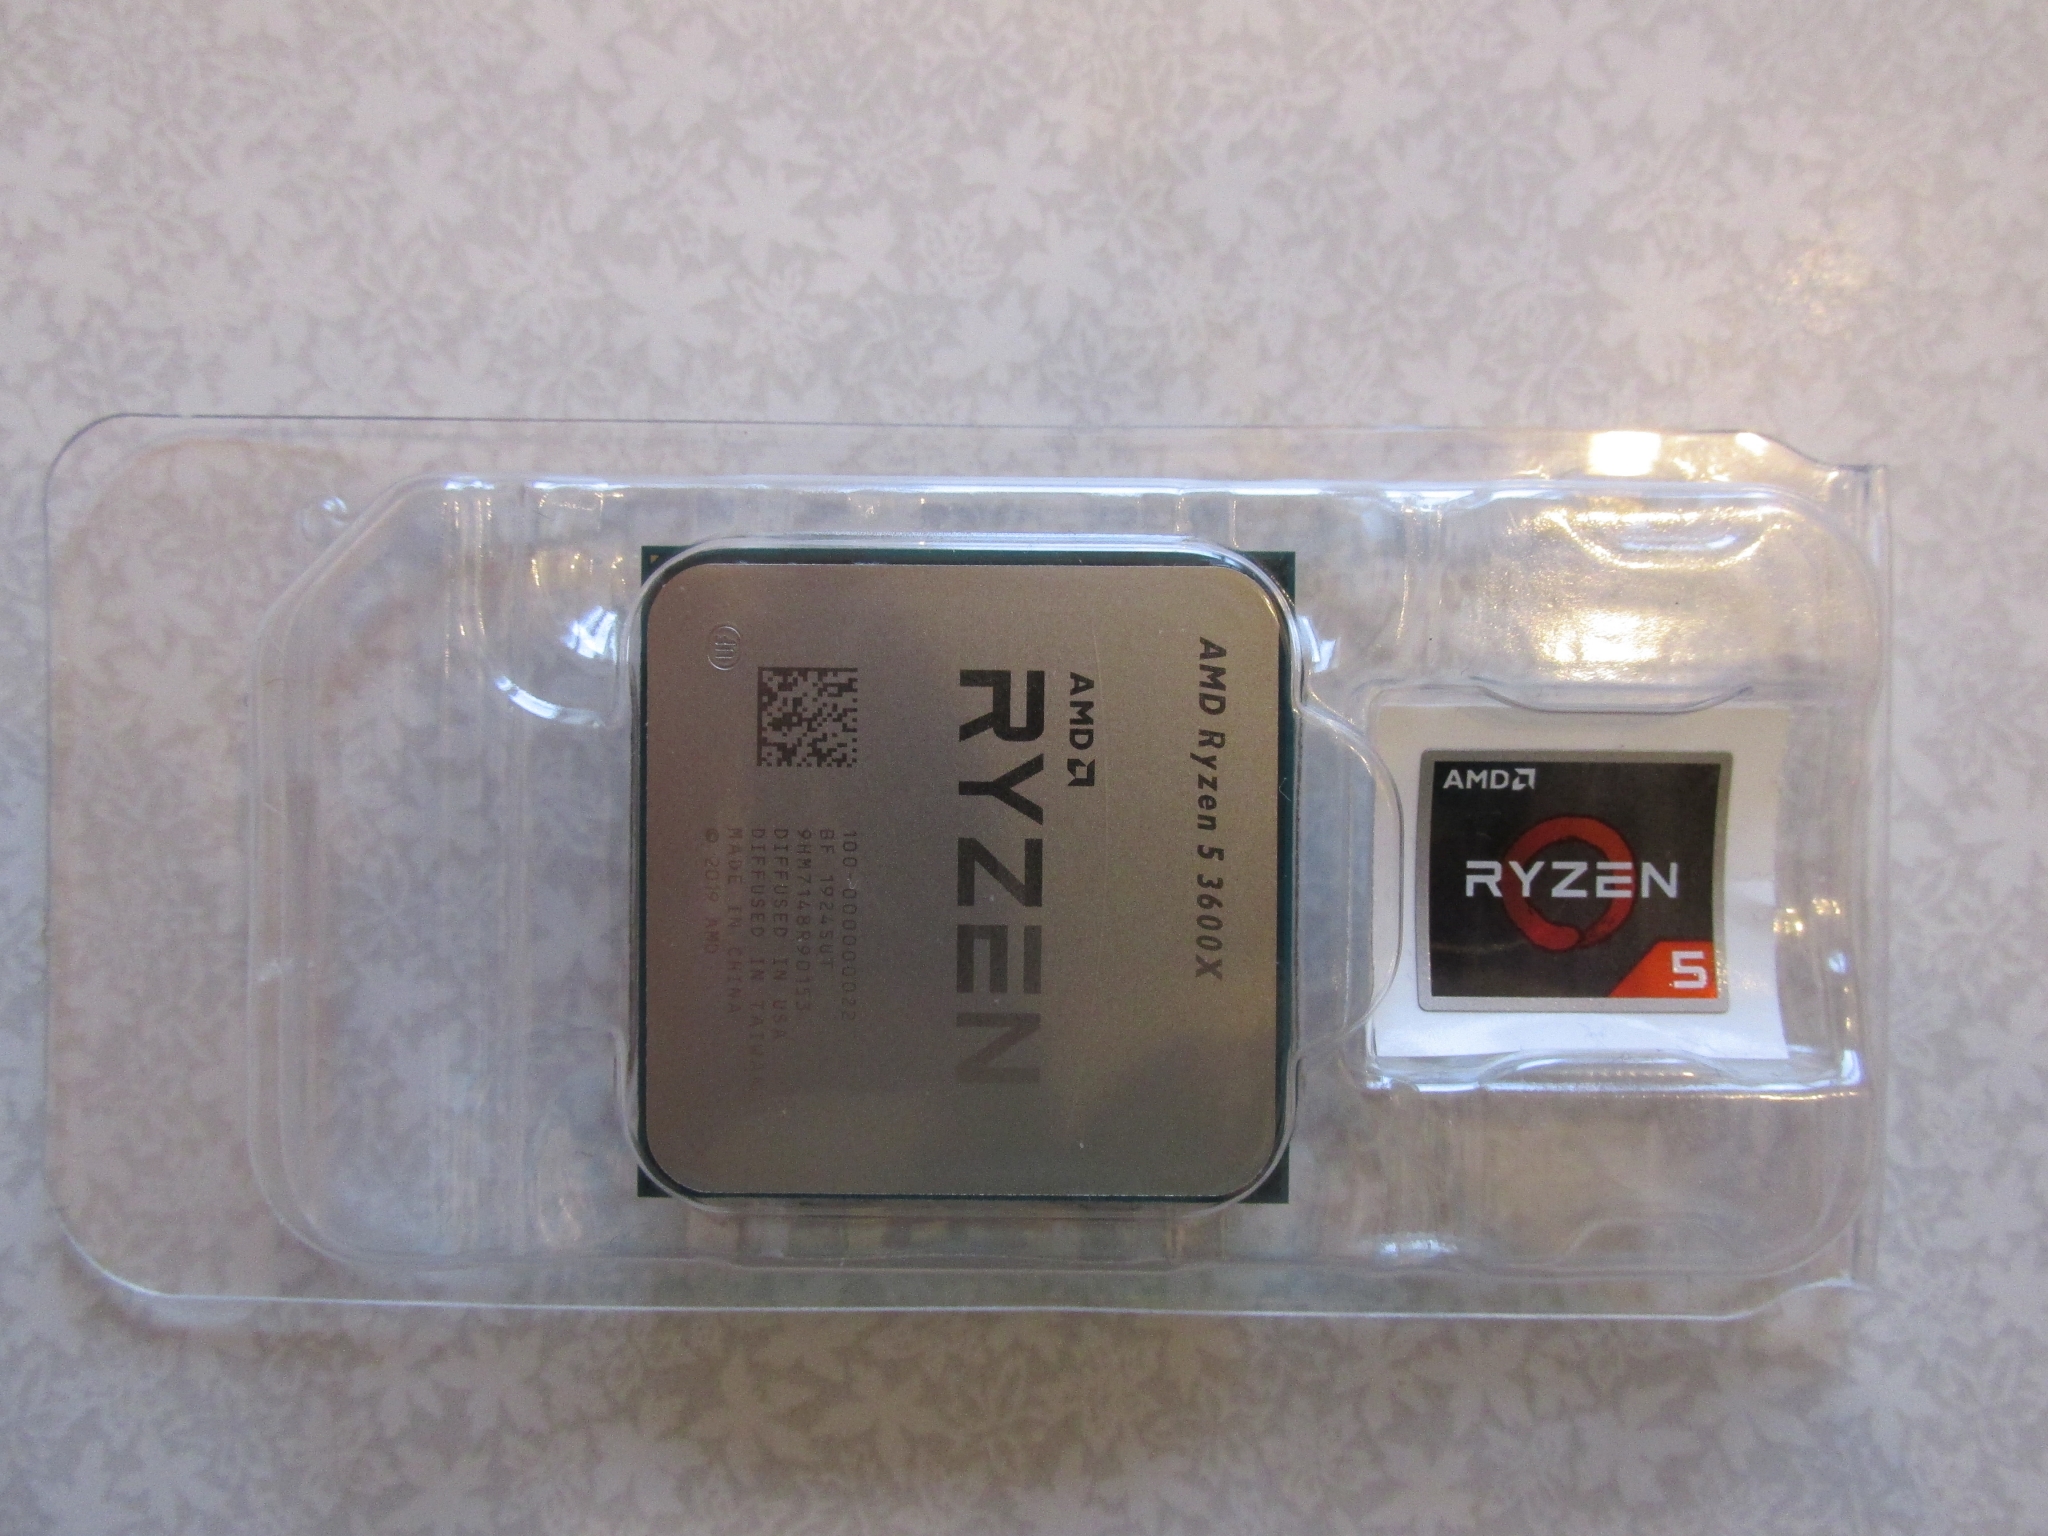 Amd ryzen 5600 g. AMD Ryzen 5 3600. AMD Ryzen 5 3600 OEM. Процессор AMD Ryzen 5 3600 am4. 5600g Ryzen OEM упаковка.